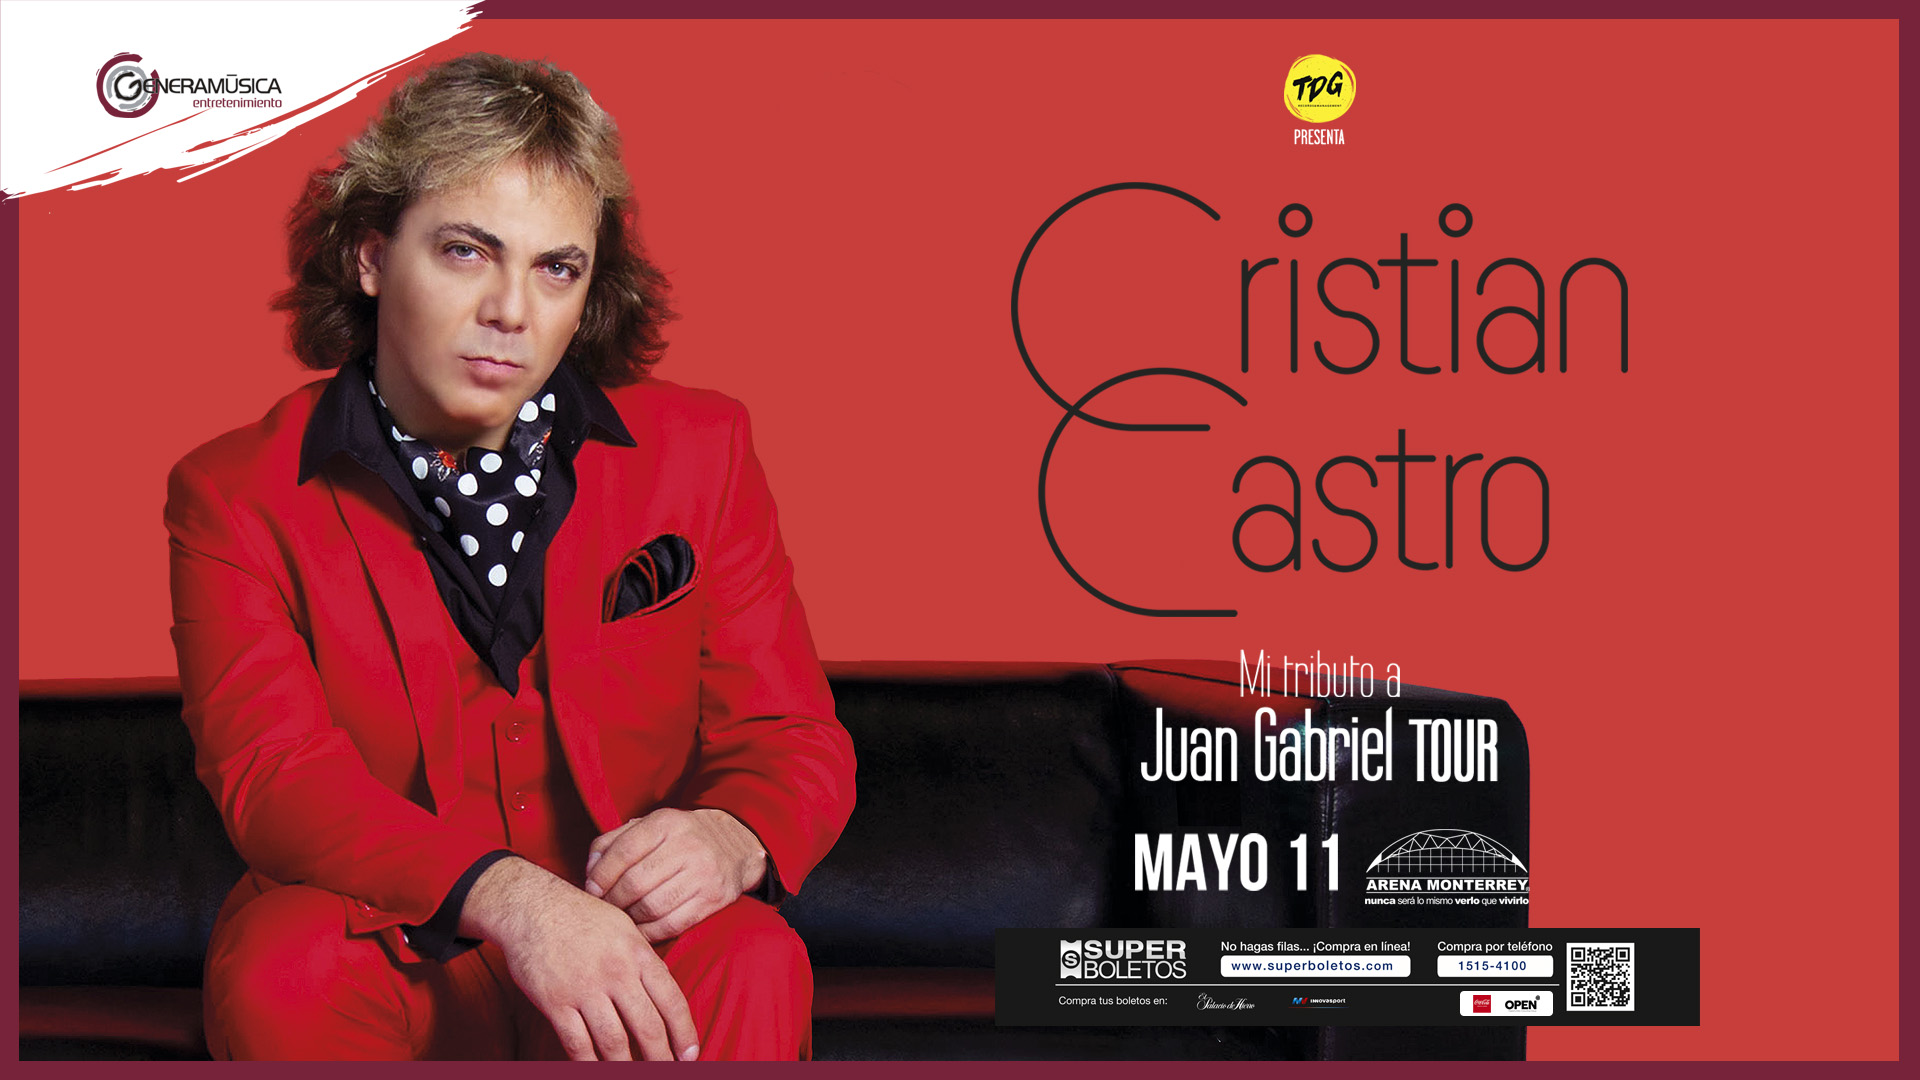 Cristian Castro presenta su tour mi tributo a Juan Gabriel